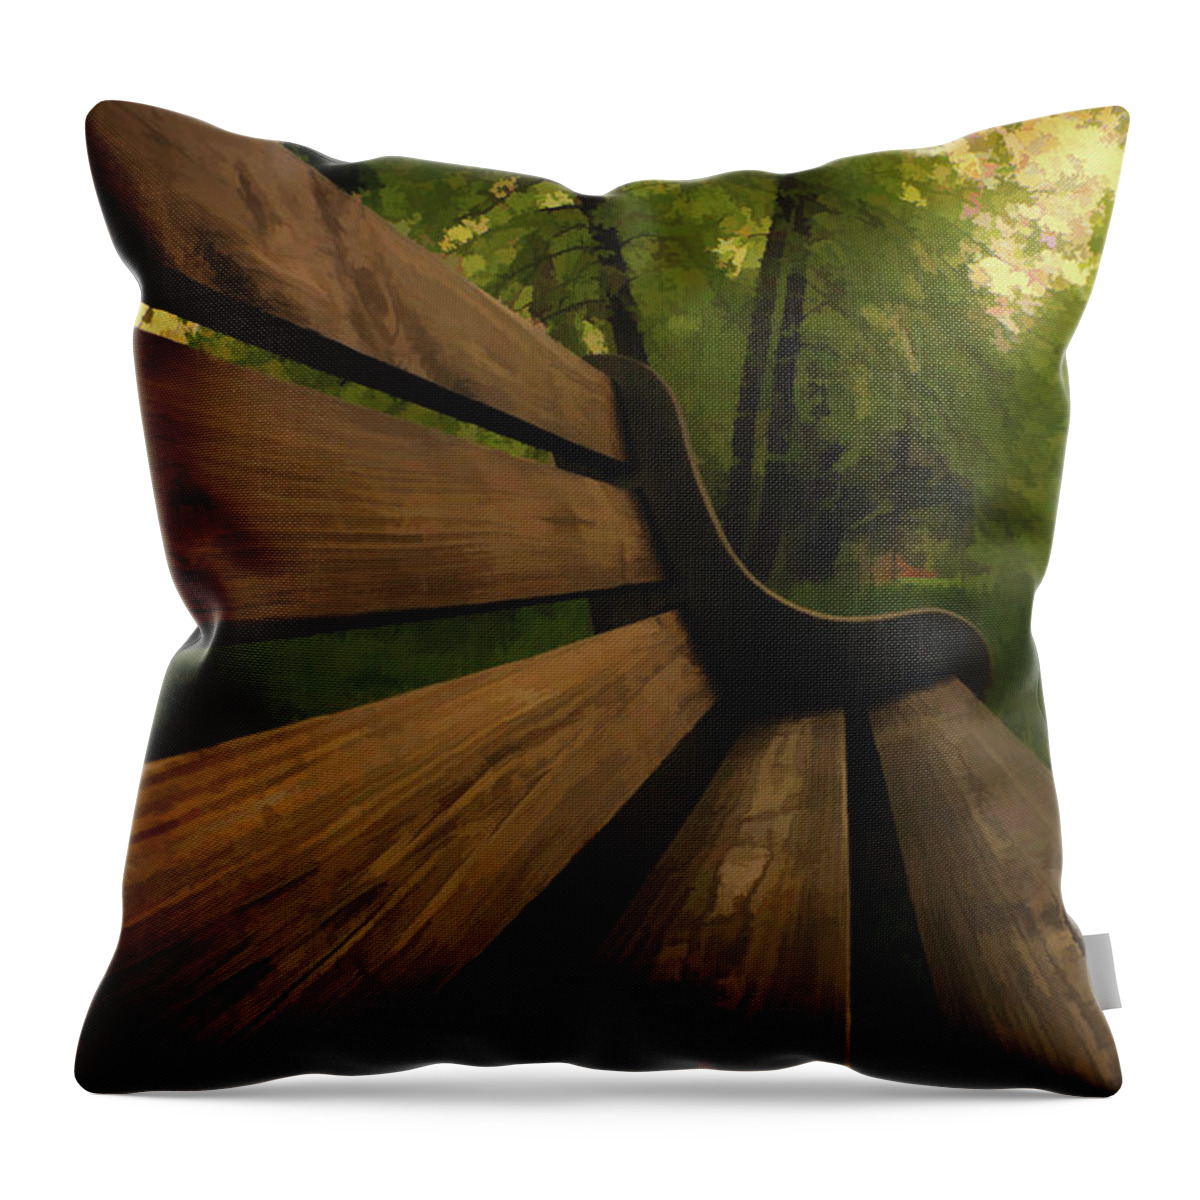 Bench Throw Pillow featuring the digital art Park Bench by Jason Fink